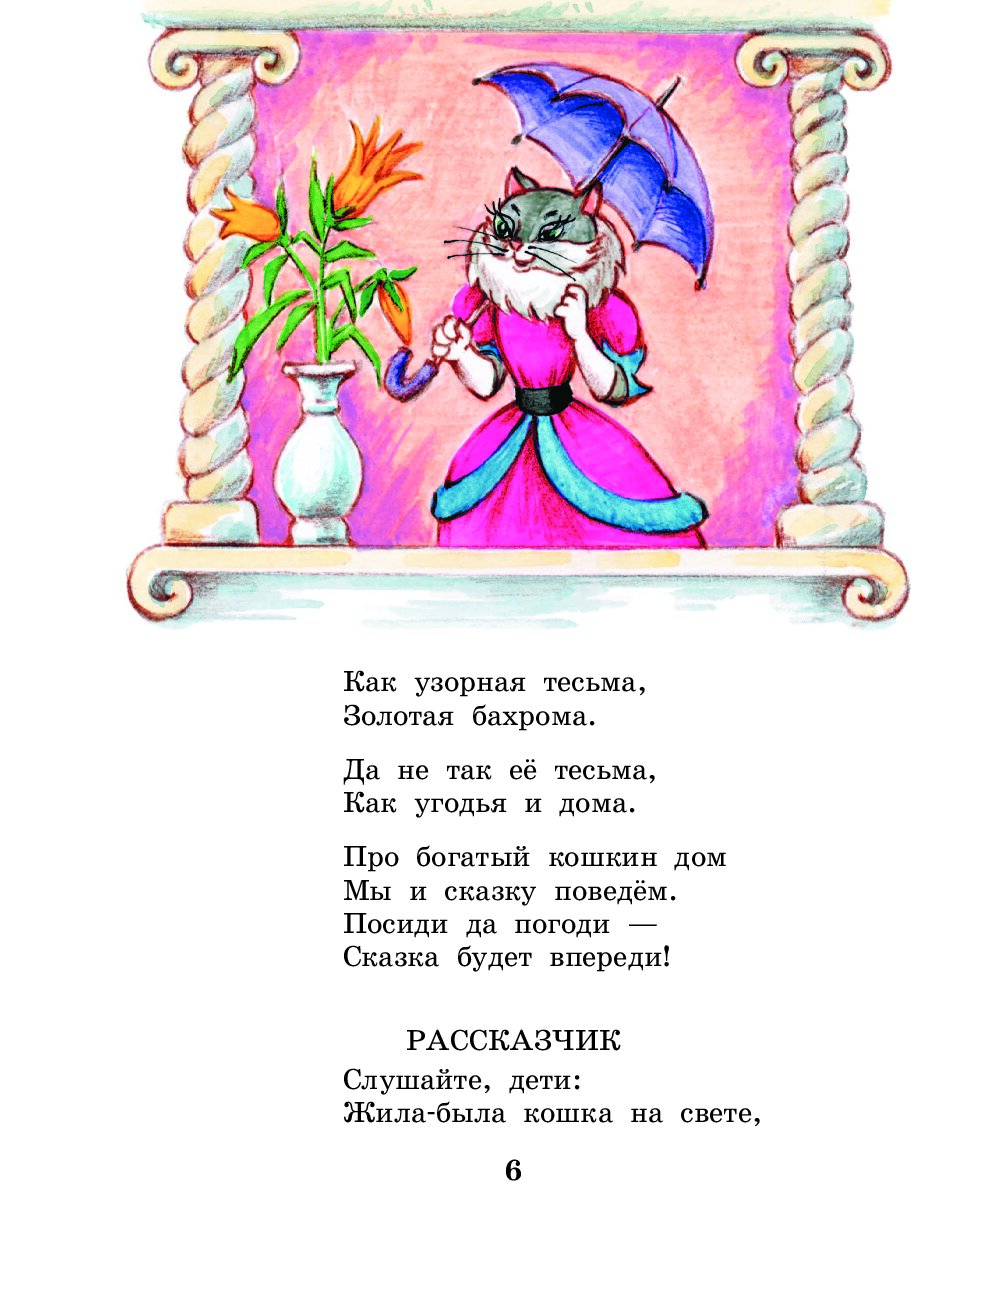 Иллюстрация к произведению Маршака Кошкин дом